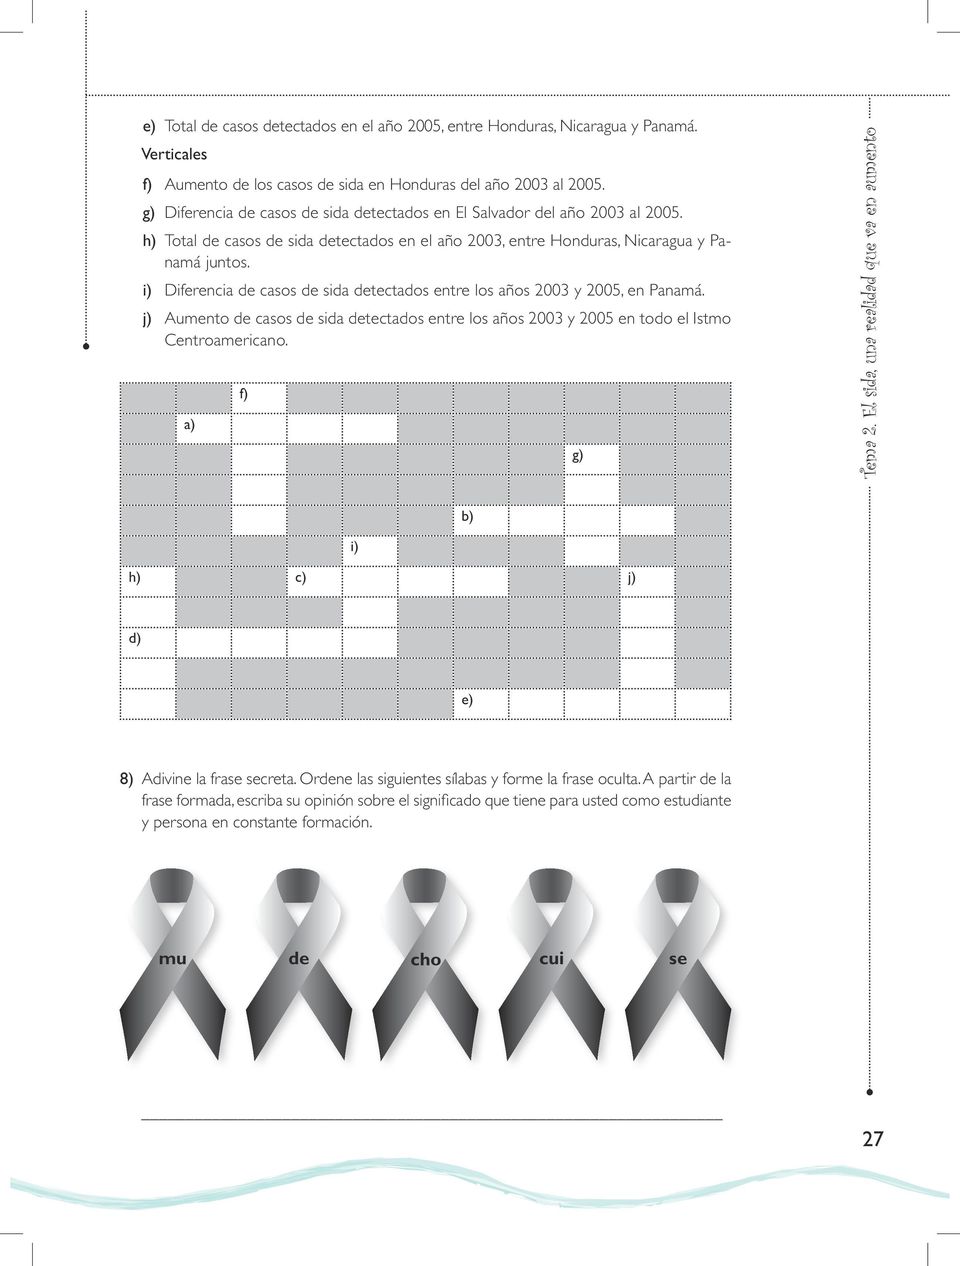 i) Diferencia de casos de sida detectados entre los años 2003 y 2005, en Panamá. j) Aumento de casos de sida detectados entre los años 2003 y 2005 en todo el Istmo Centroamericano. a) f) g) Tema 2.